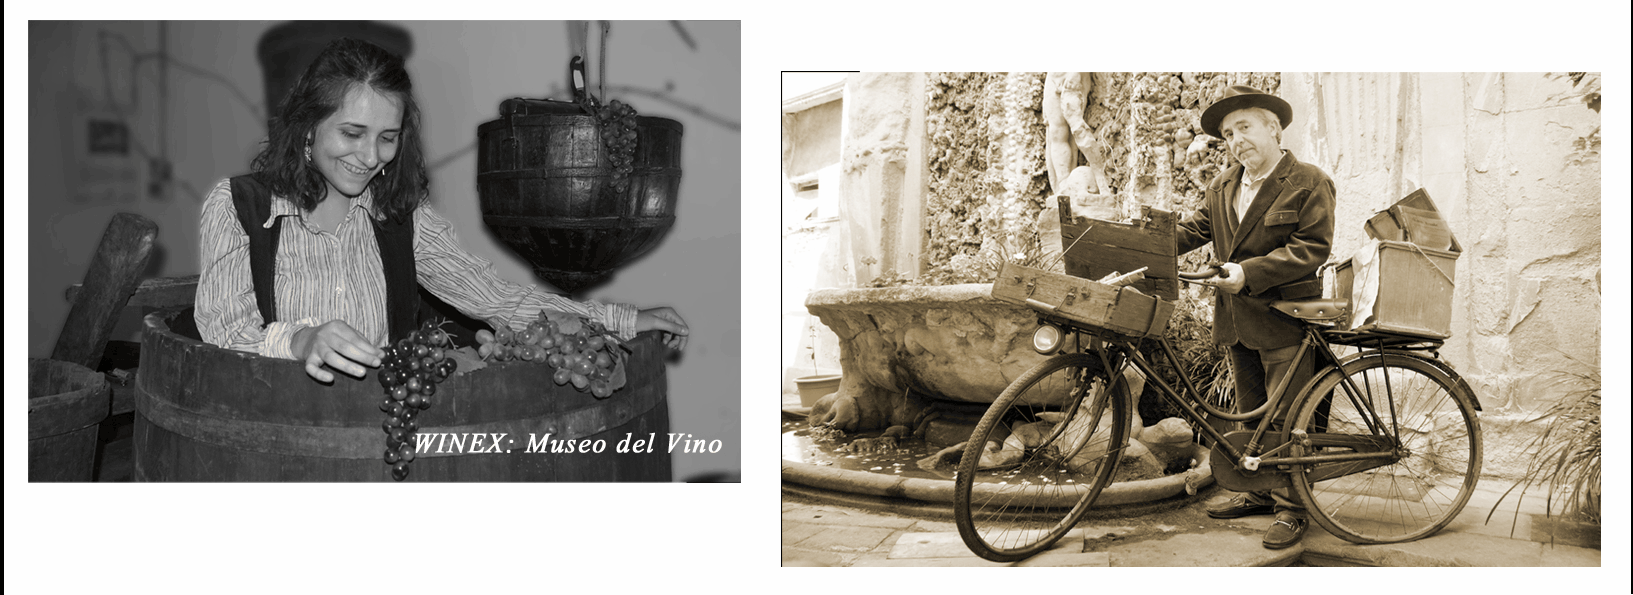 Winex, Museo del Vino, Daviddino, Cucina etrusca bicicletta enologo